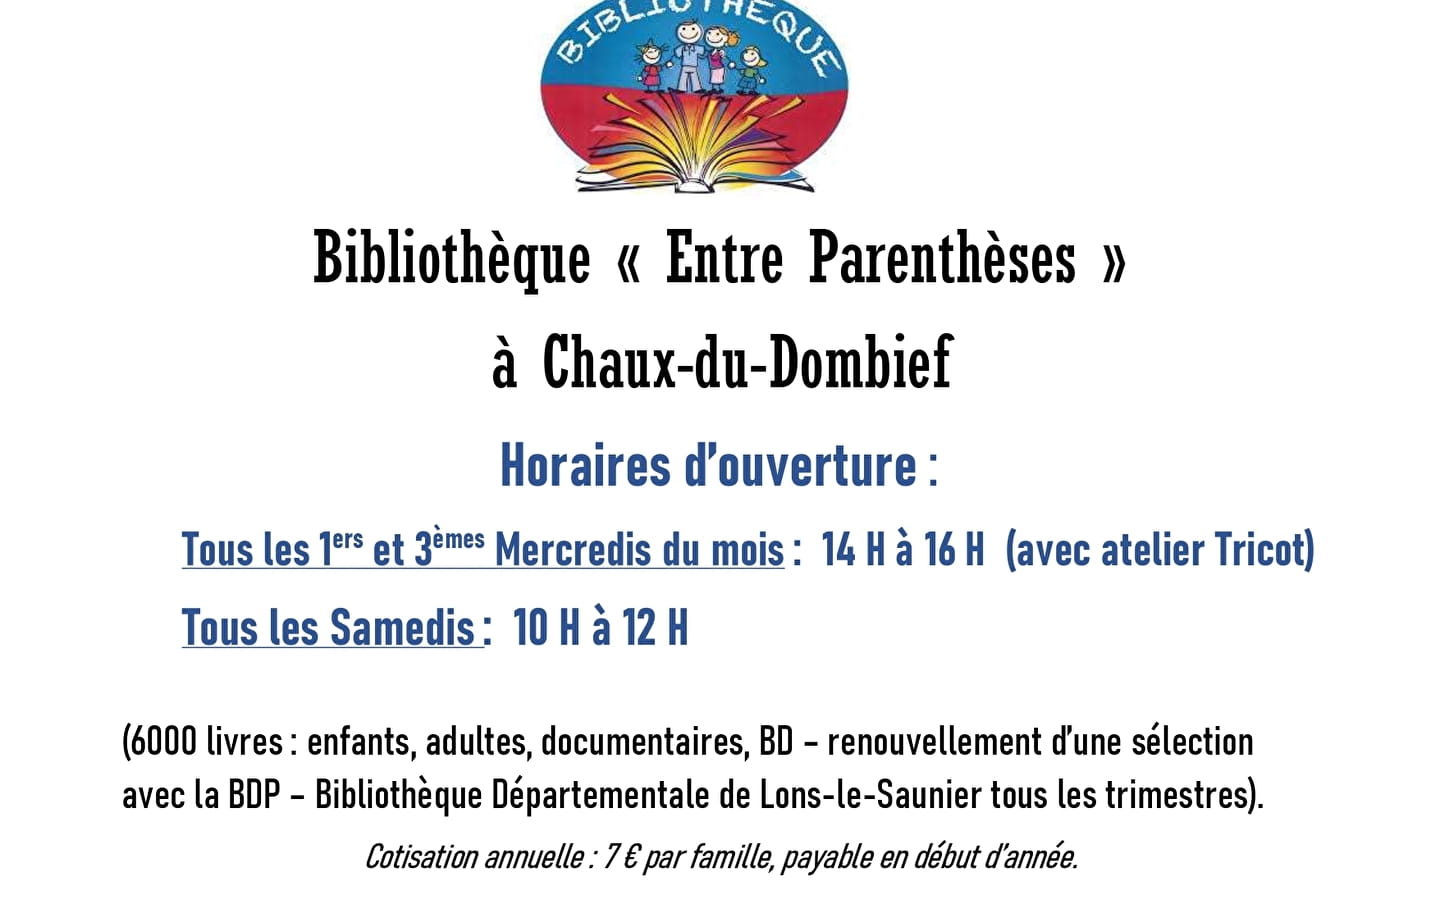 Bibliothèque de Chaux-du-Dombief